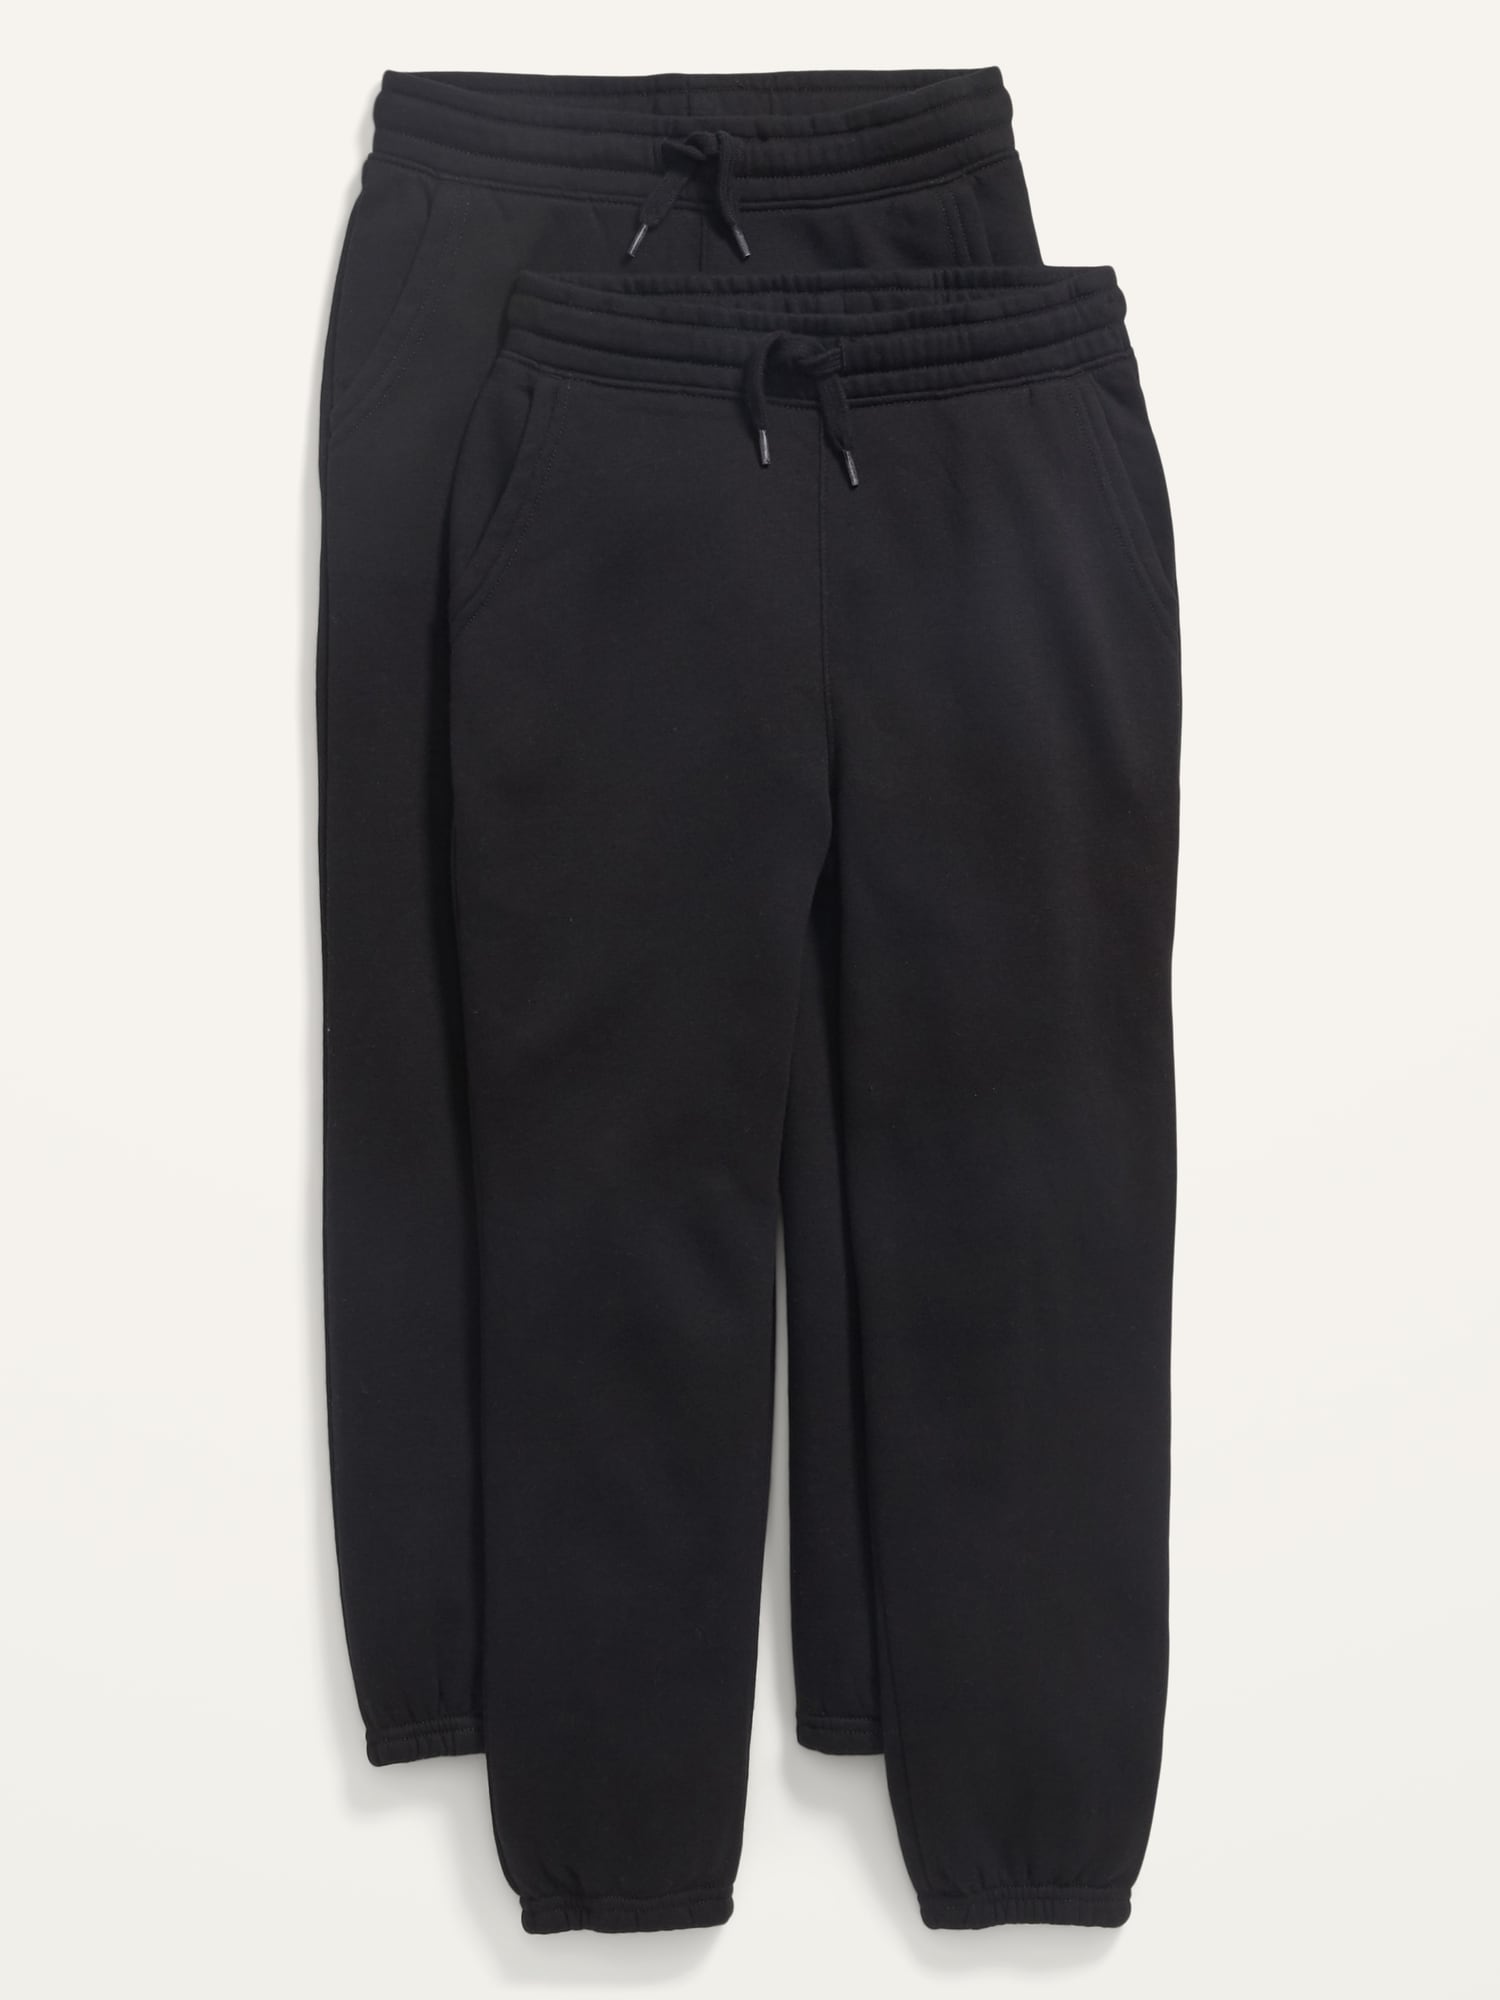 Vintage Gender-Neutral Jogger Sweatpants 2-Pack for Kids Hot Deal